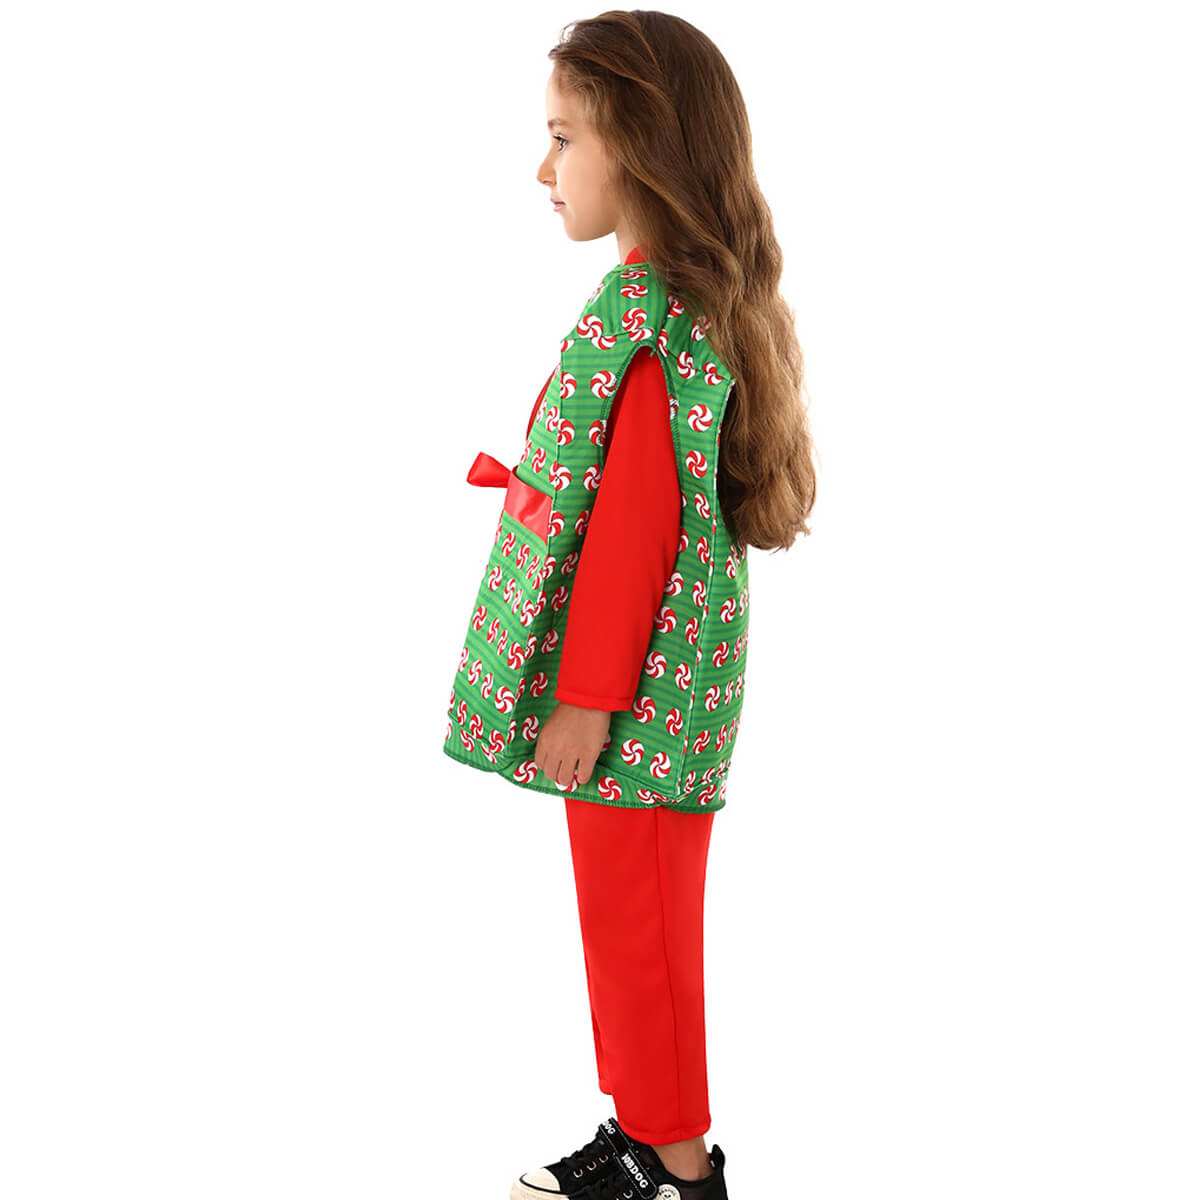 Sunisery Little Boys Girls Christmas Gift Box Costume Sleeveless